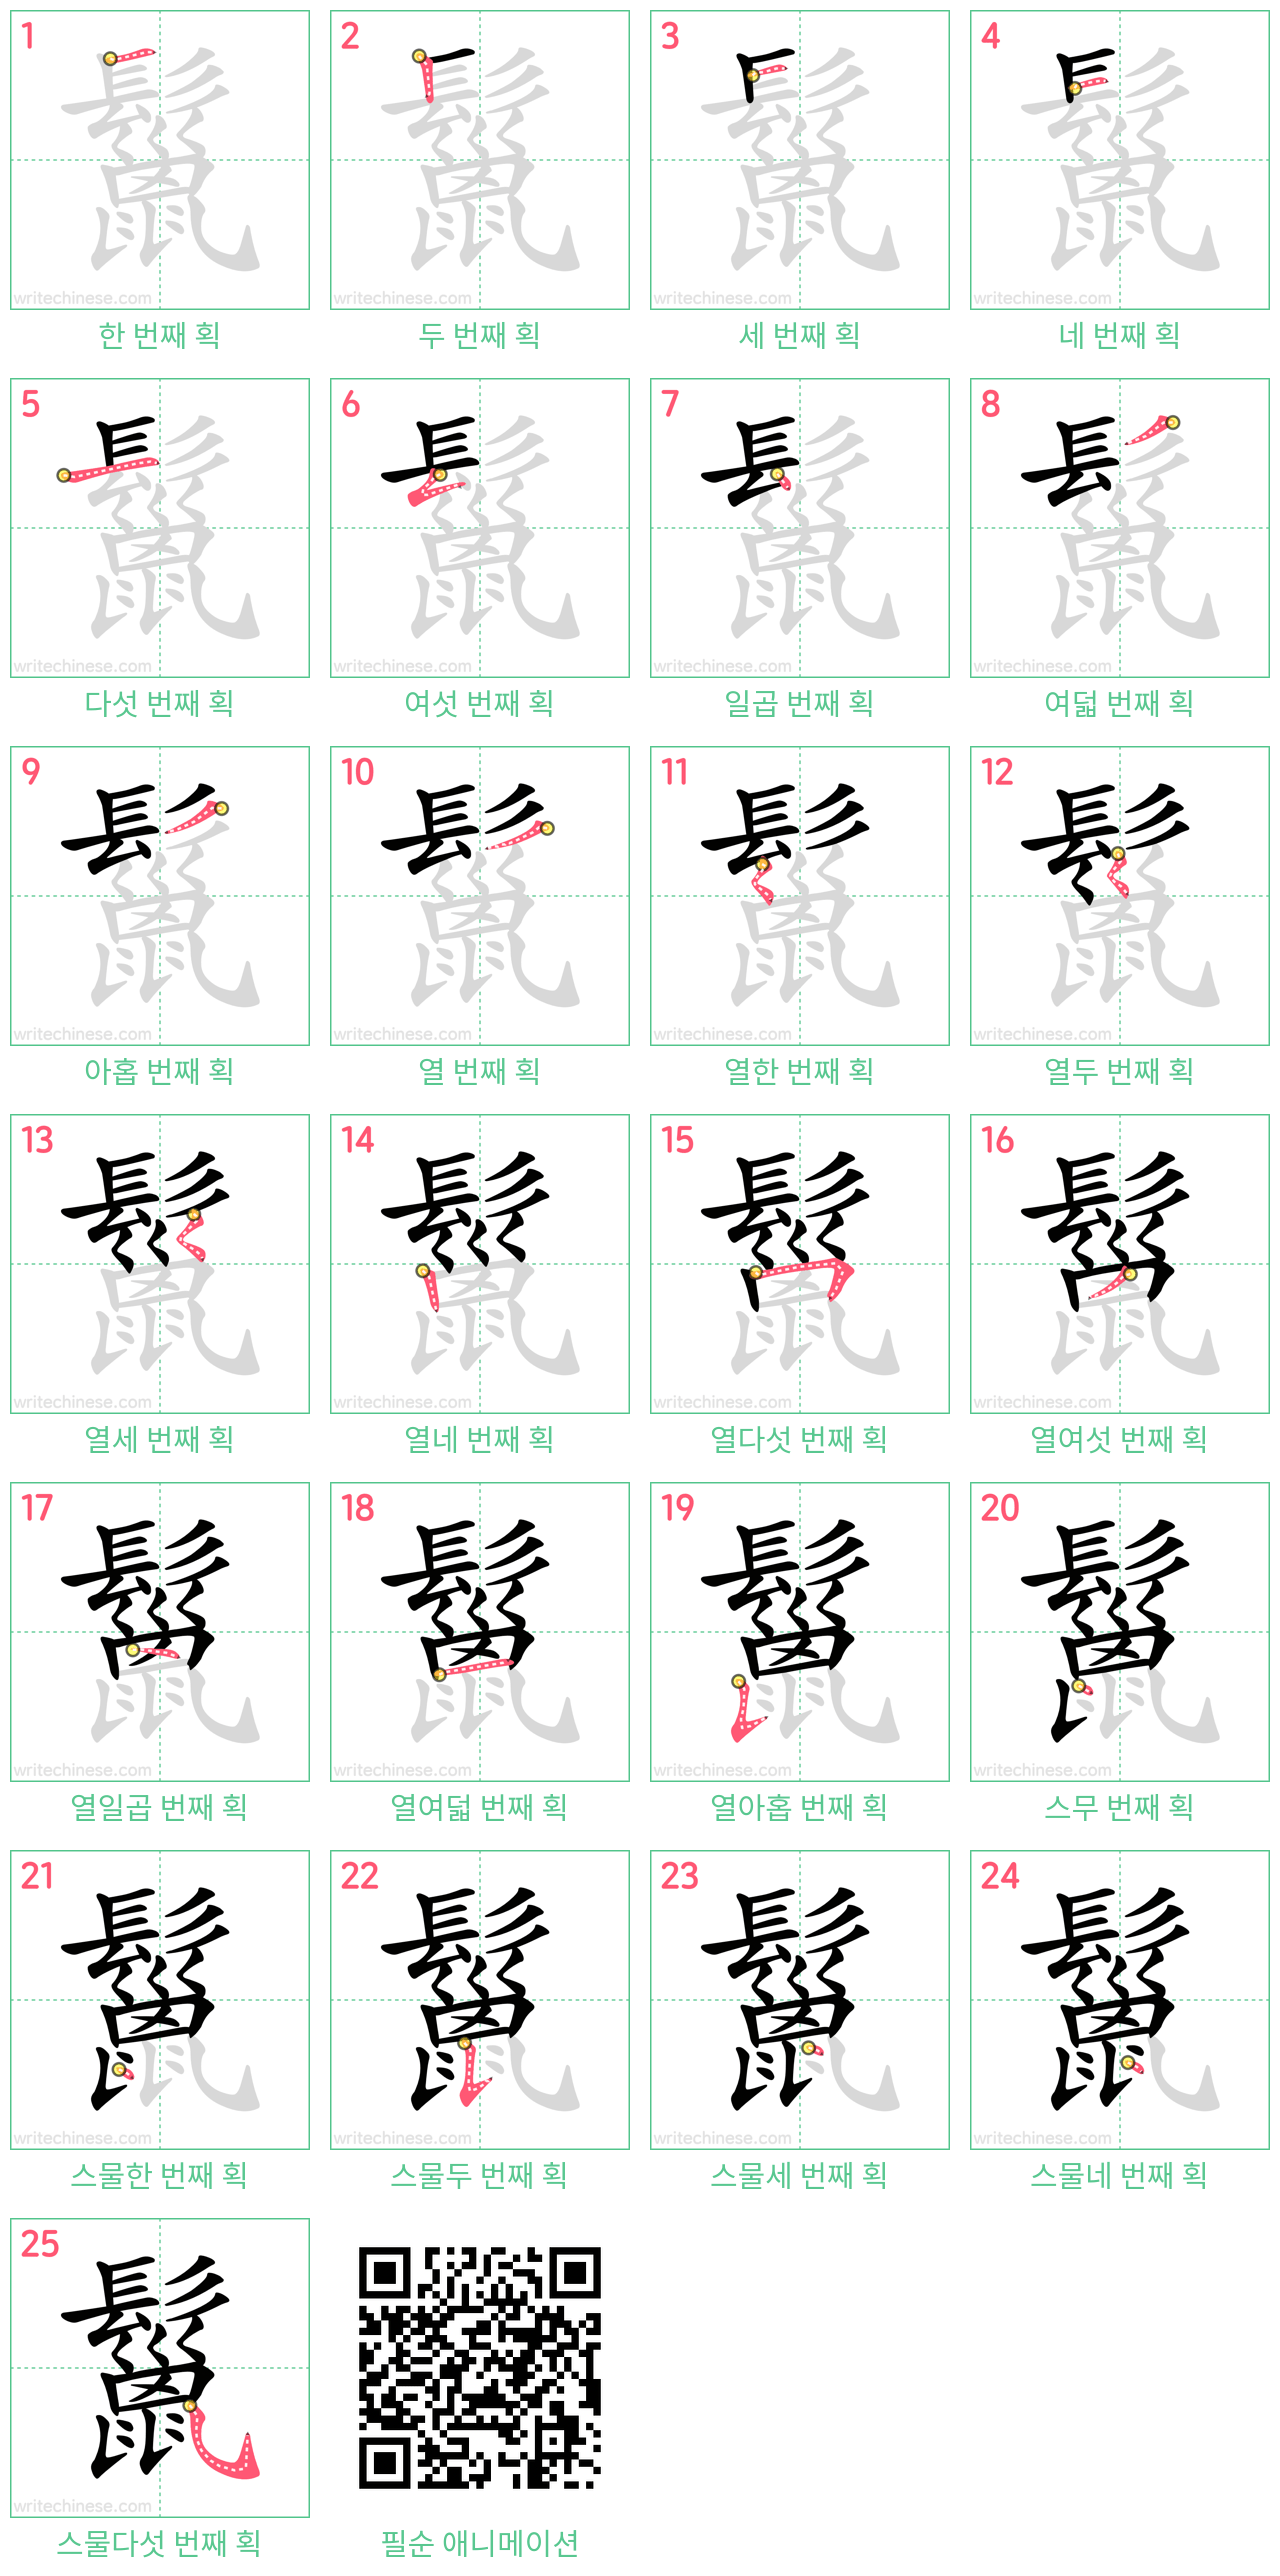 鬣 step-by-step stroke order diagrams